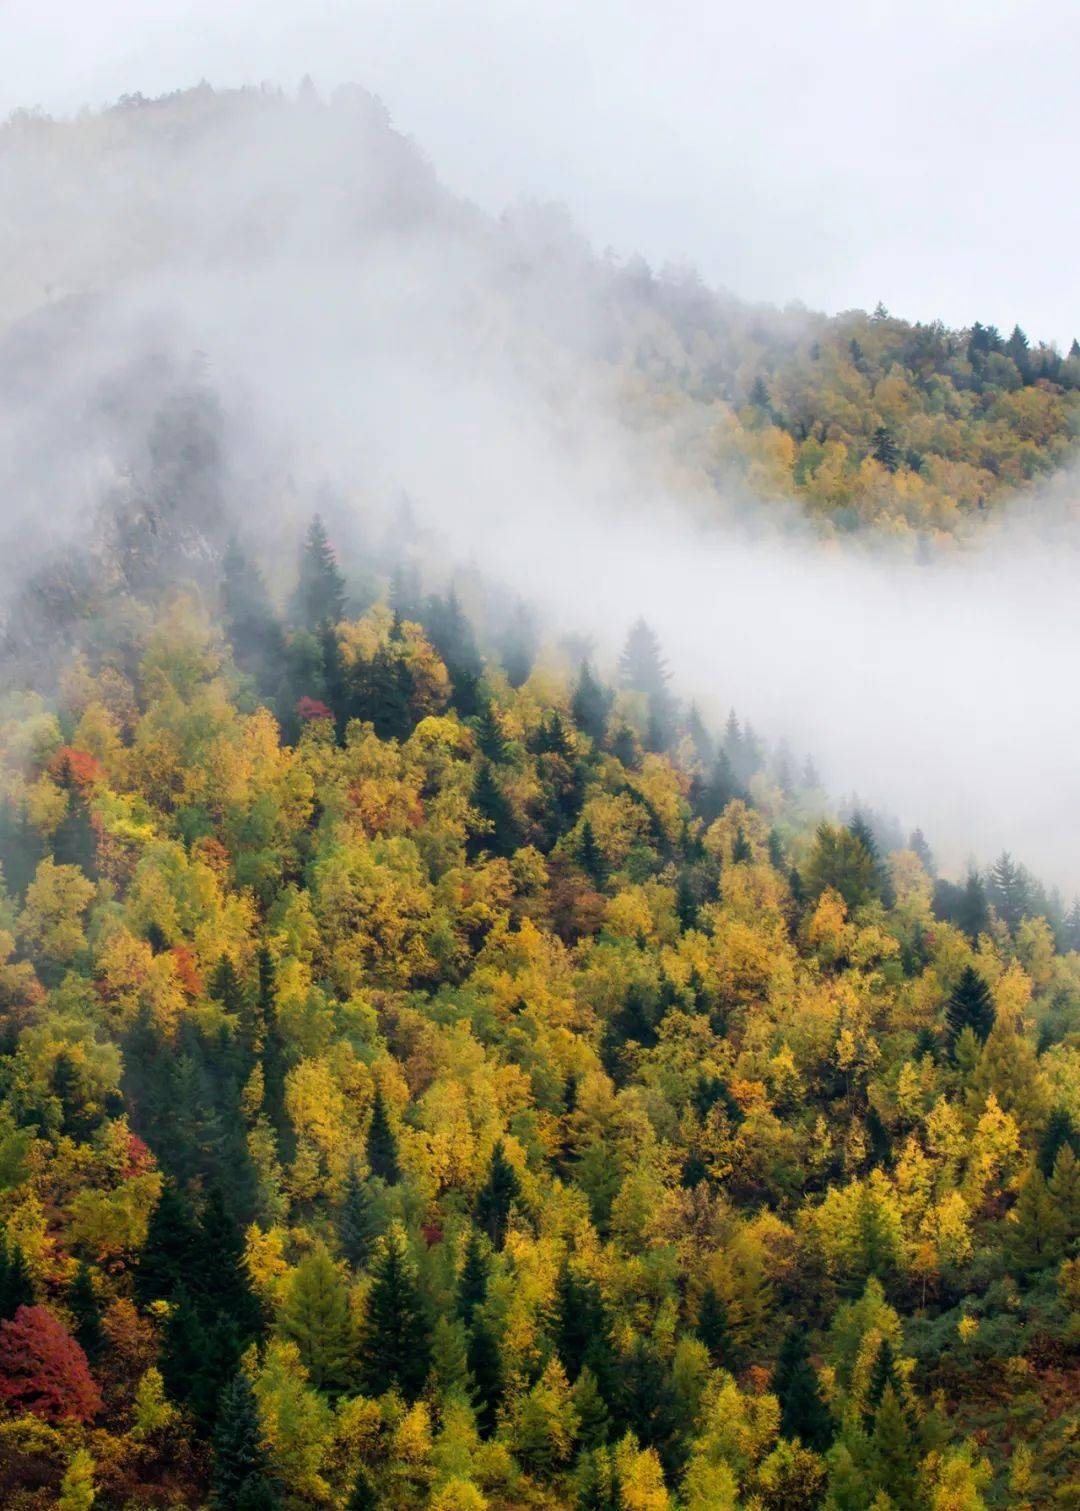 芦芽山风景区已进入秋色最佳观赏期,48万亩彩色林海美如画!